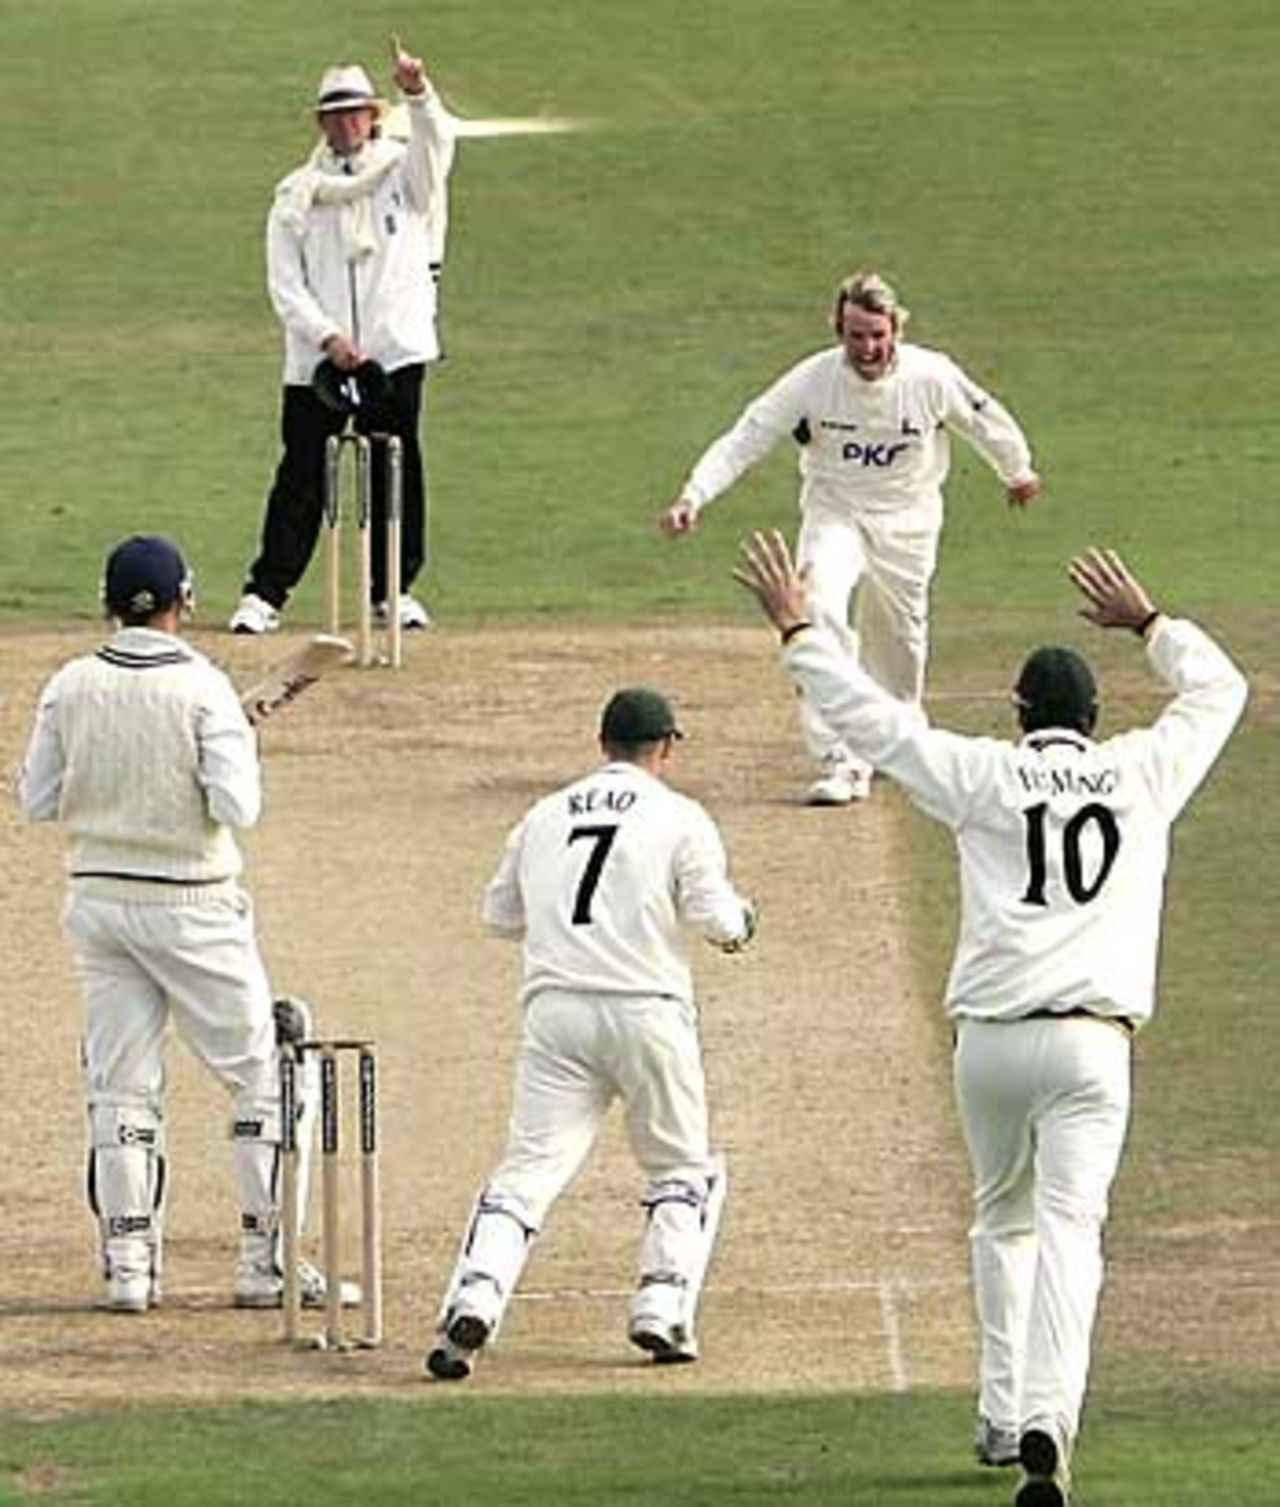 Graeme Swann picks up Martin van Jaarsveld's wicket, Kent v Notts, Canterbury, September 16, 2005